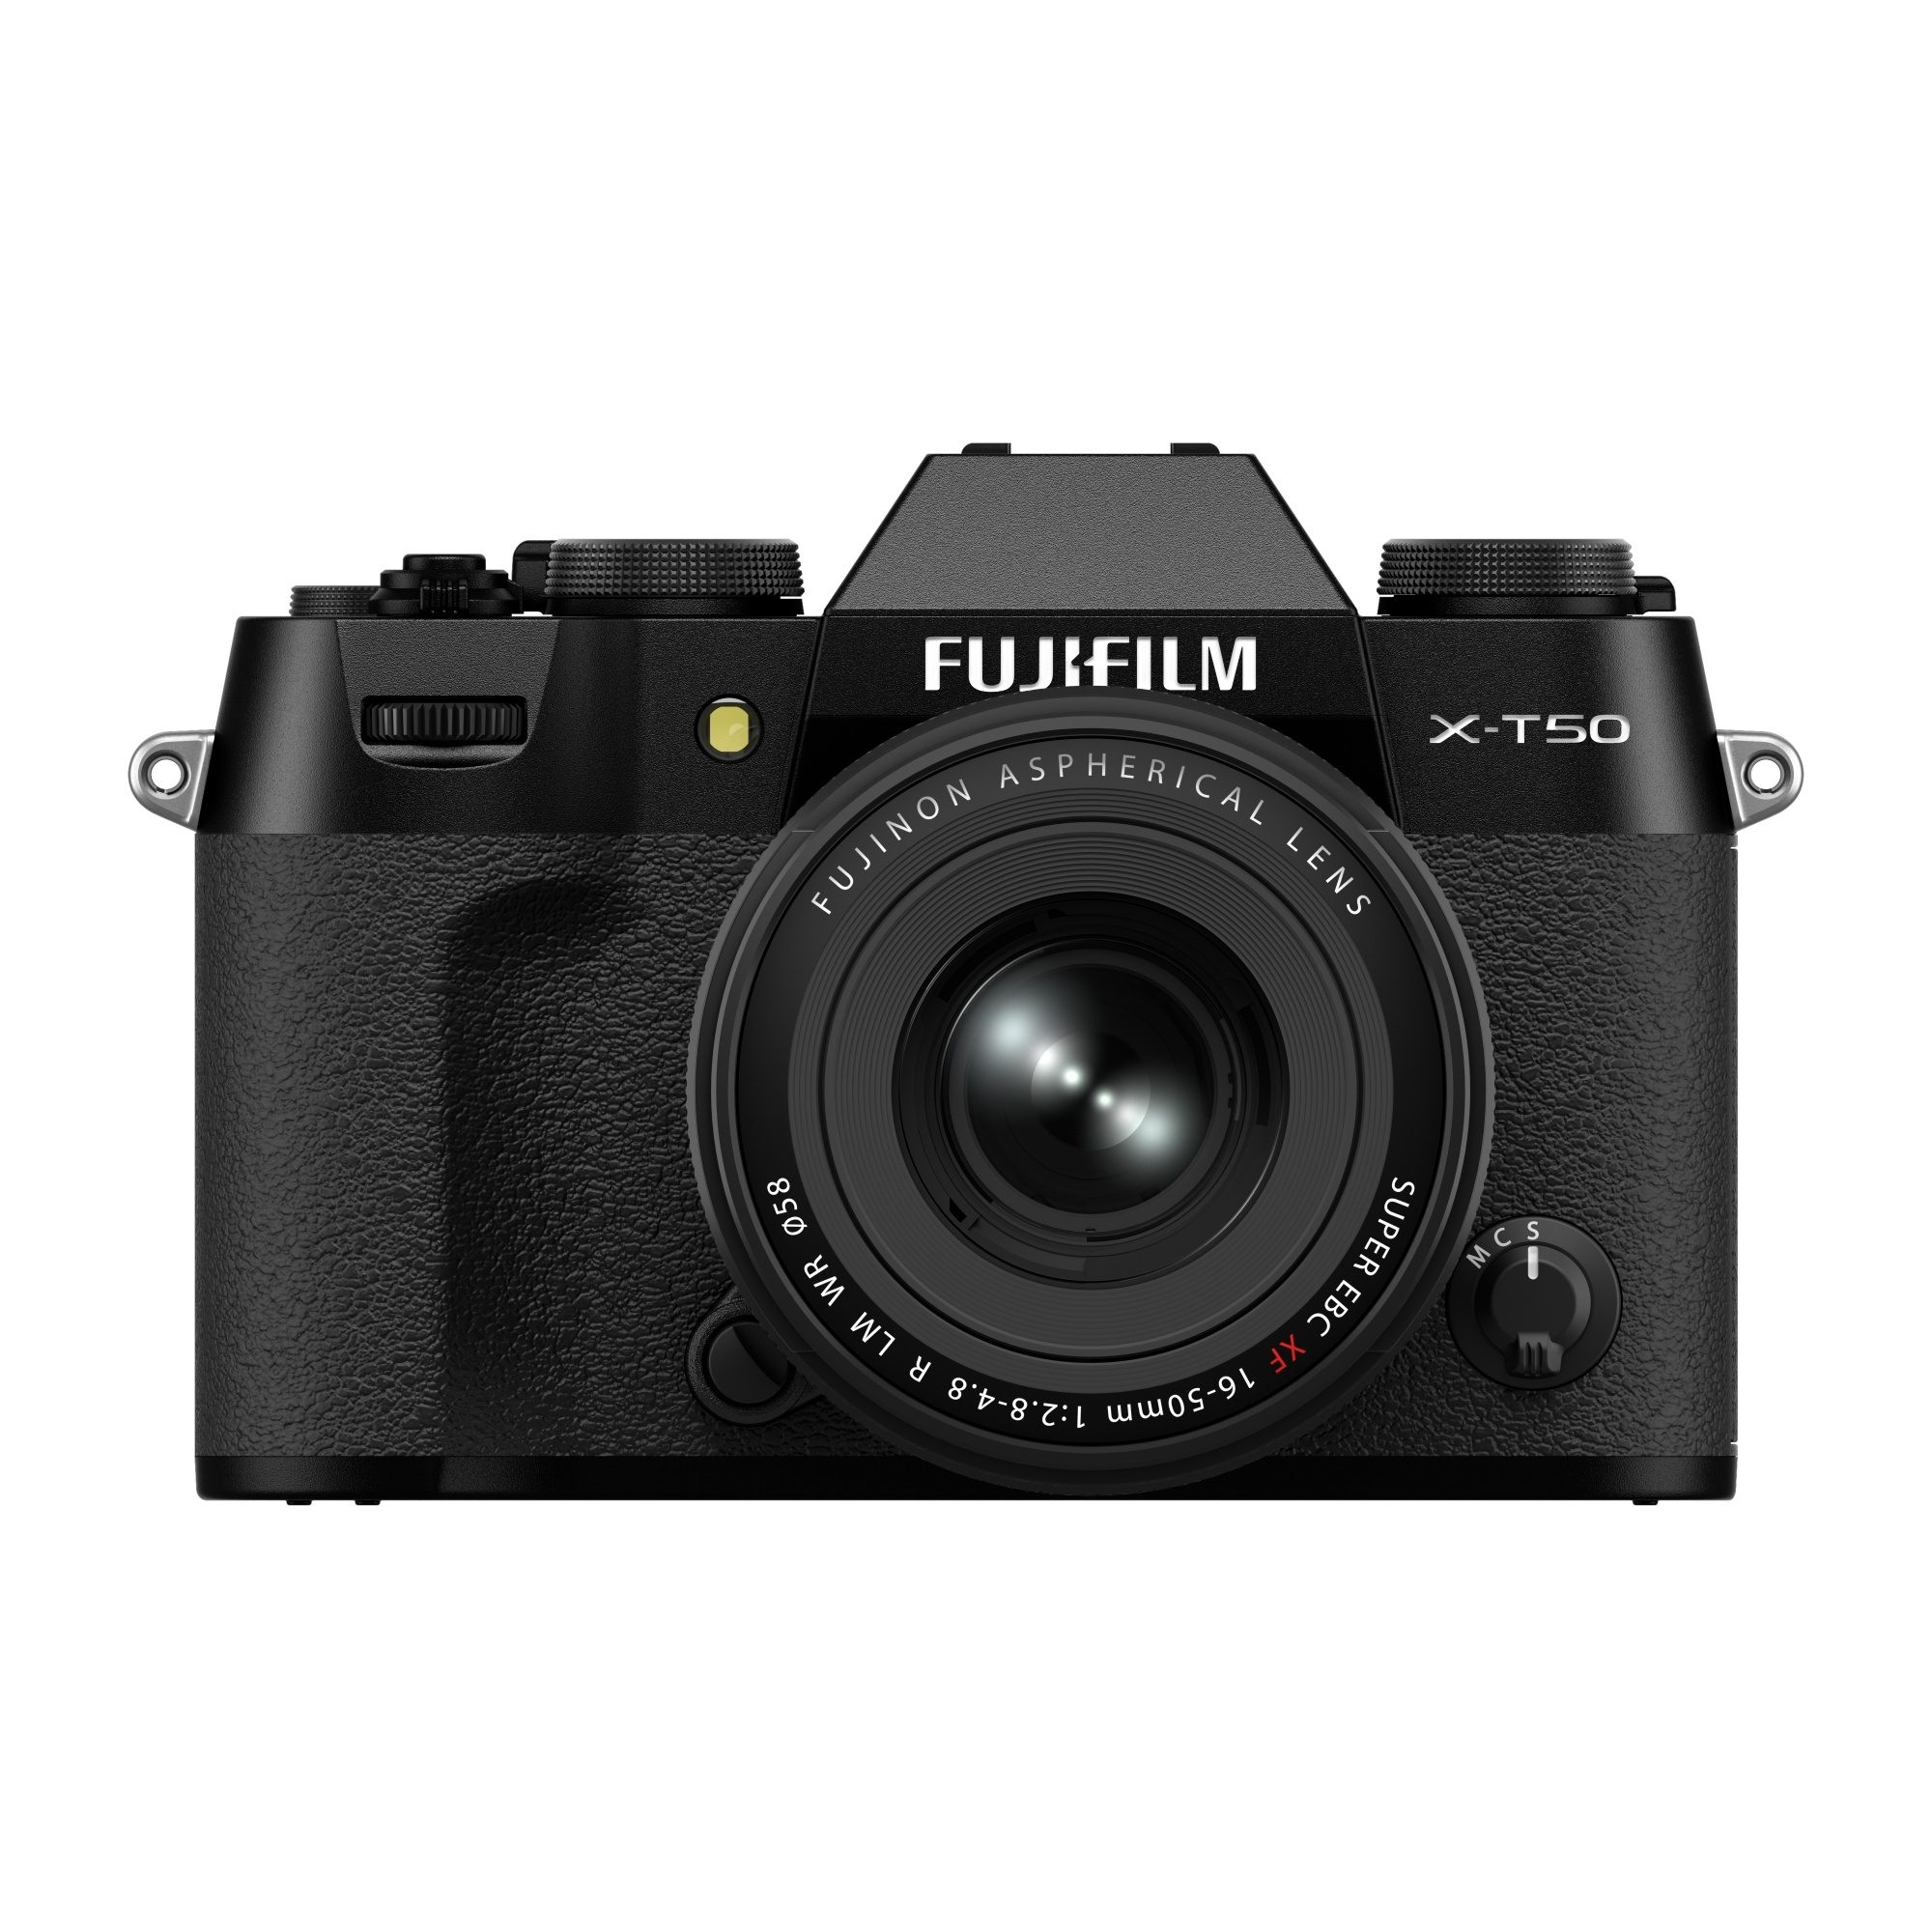 FUJIFILM X-T50 with XF16-50mmF2.8-4.8 R LM WR Black